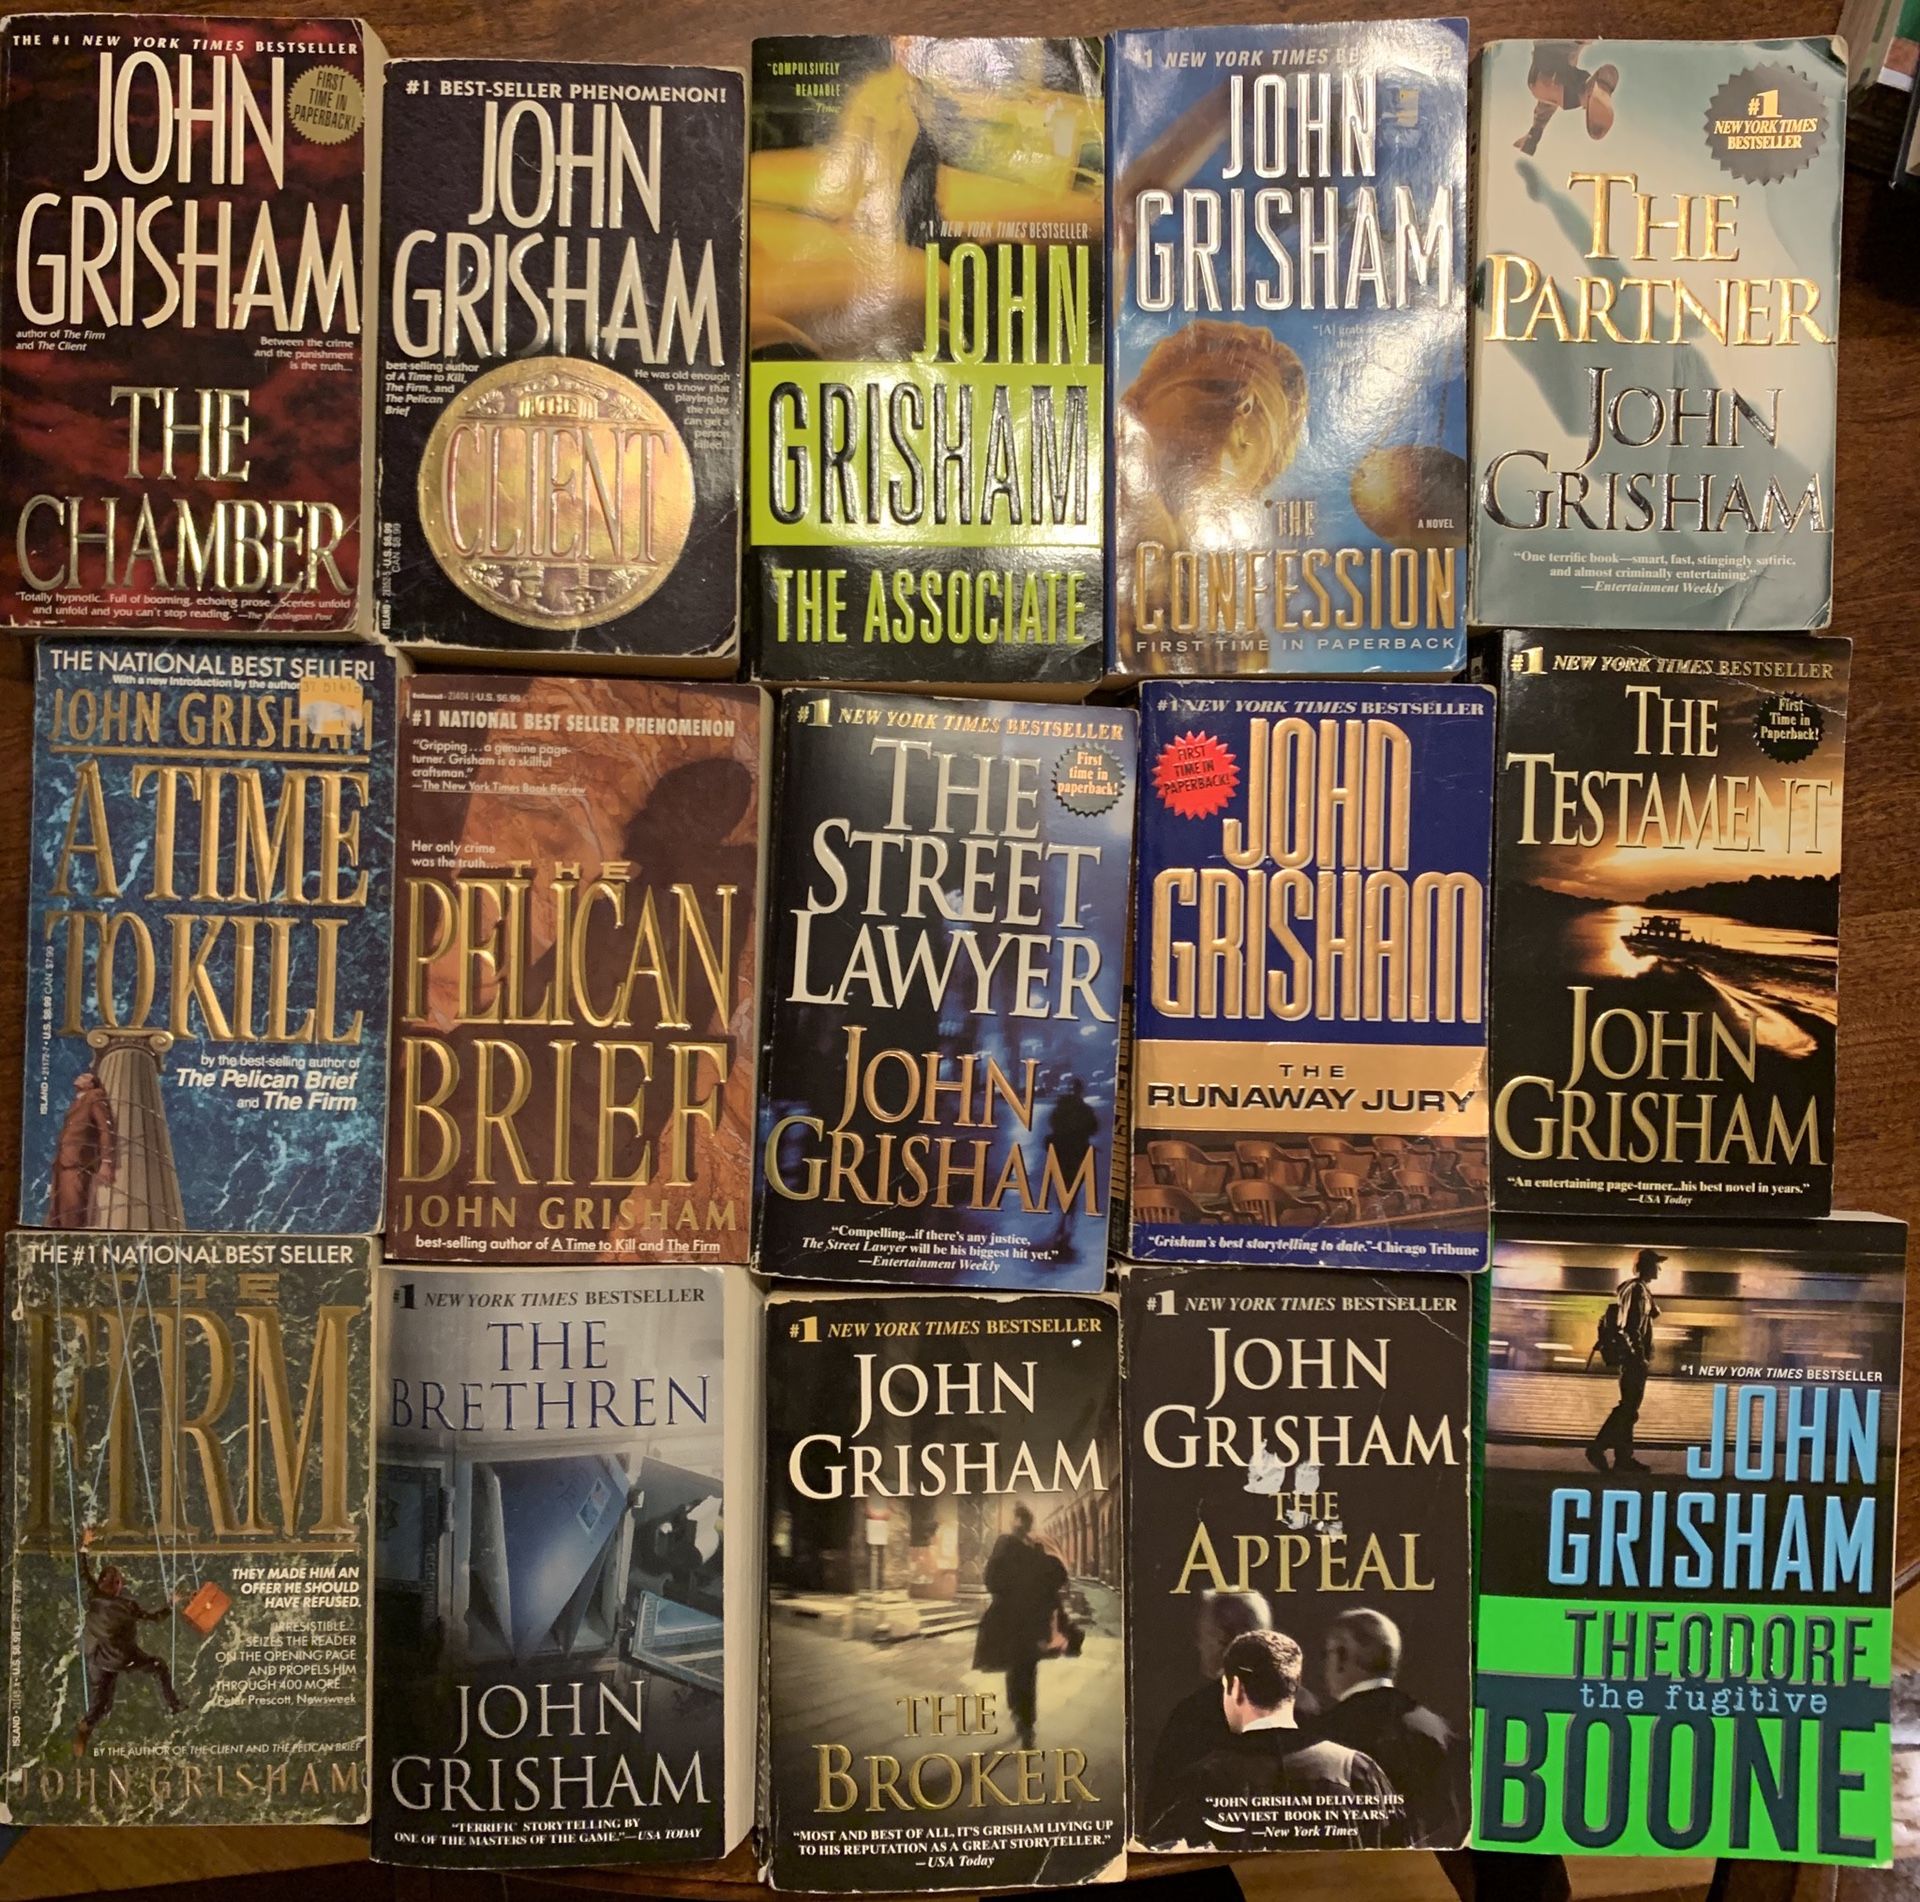 John Grisham novels